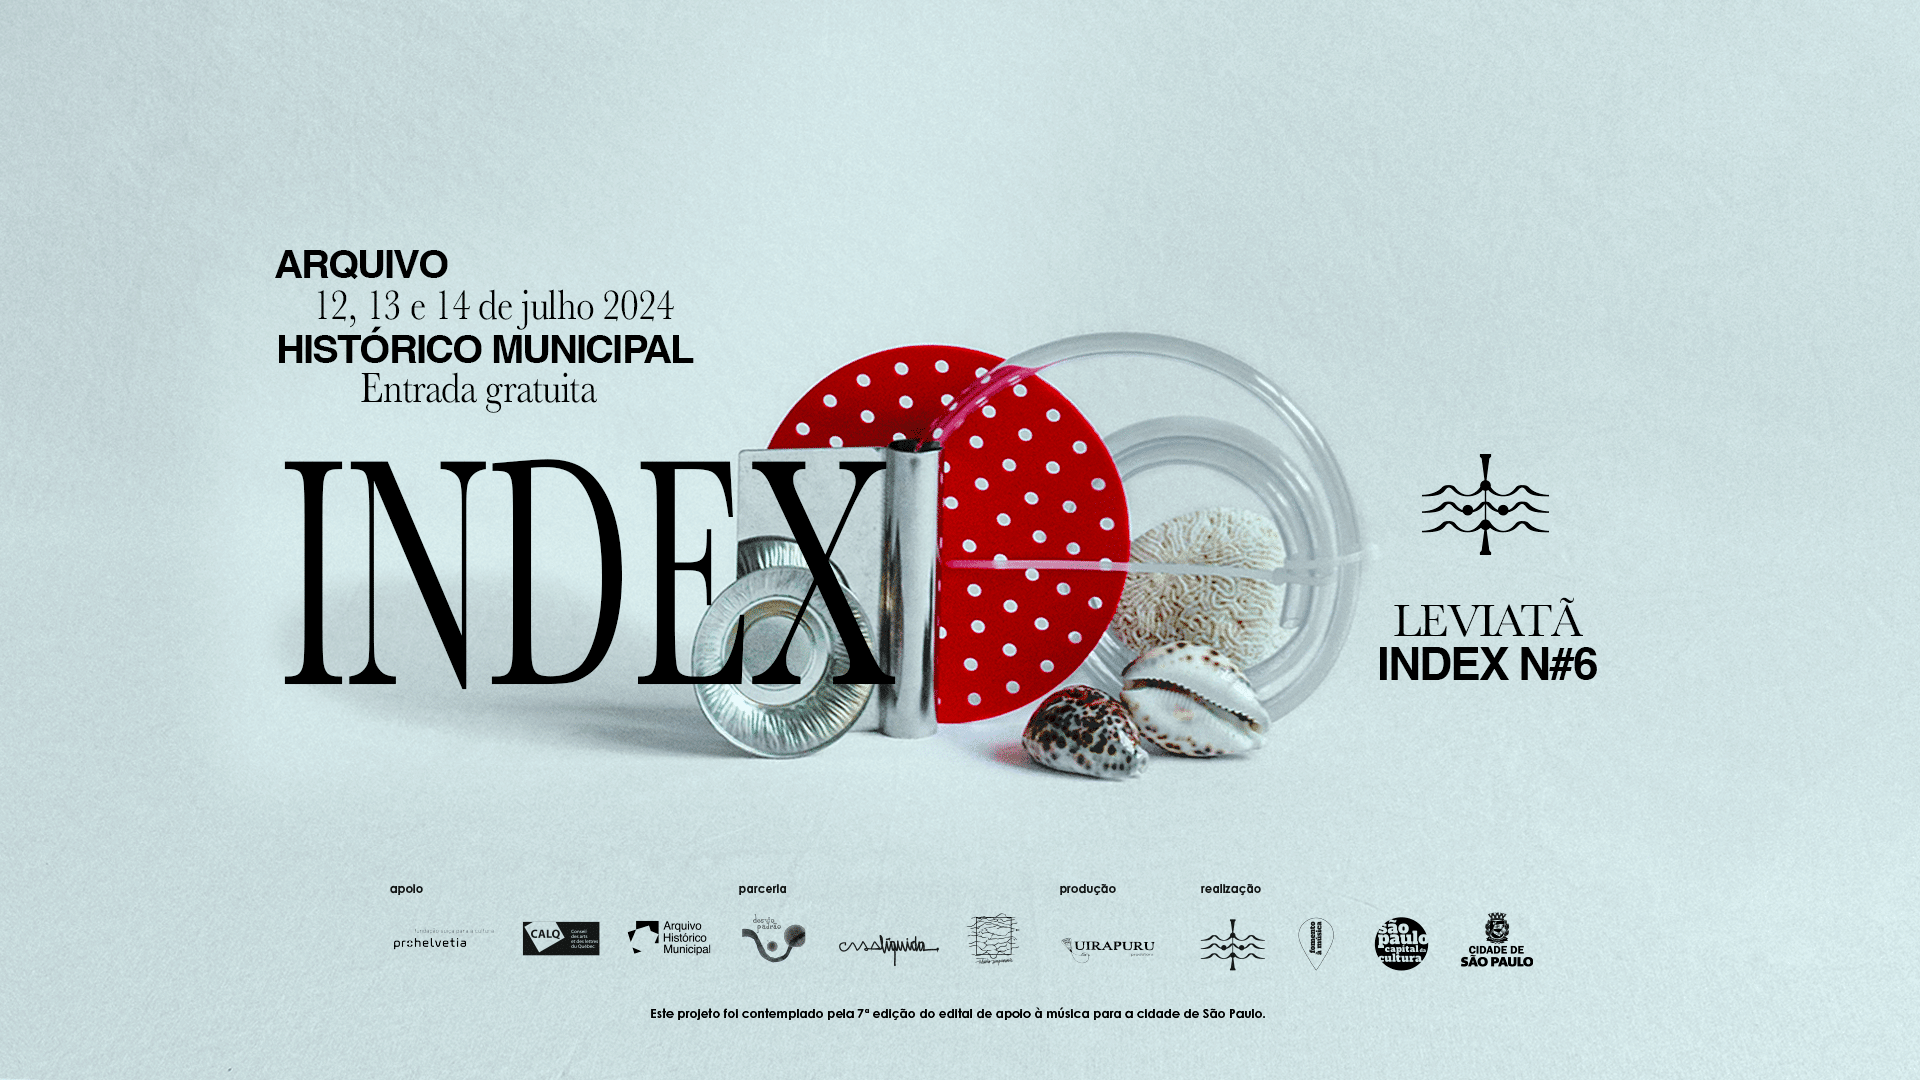 revistaprosaversoearte.com - Festival INDEX promove agenda gratuita em parceria com Arquivo Histórico Municipal de SP